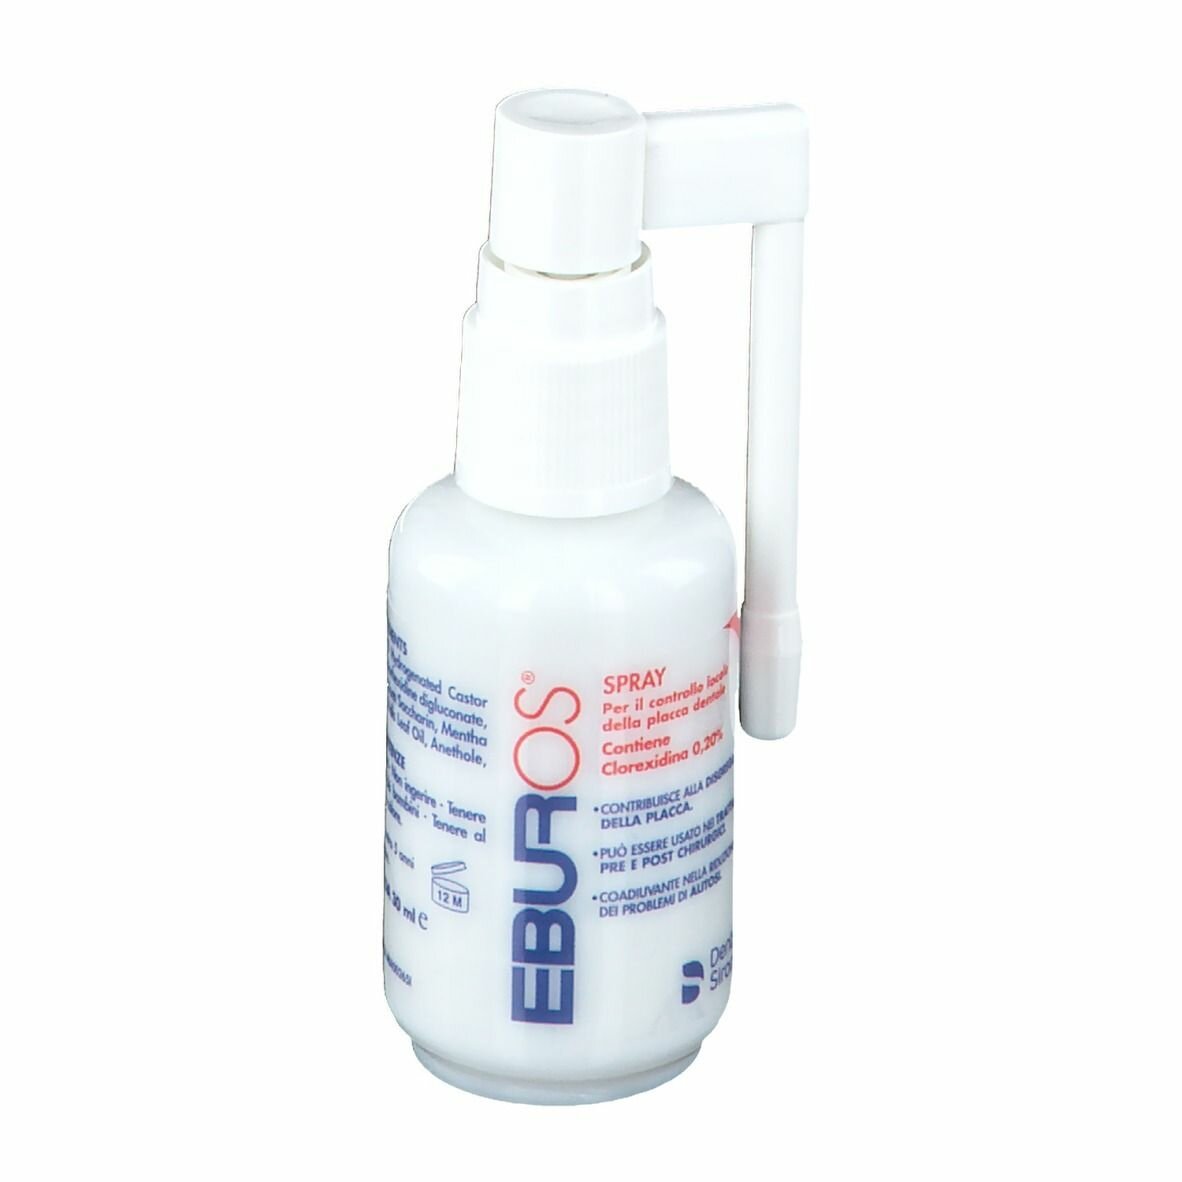 Eburos Spray con Clorexidina 0,20% 30 ml img